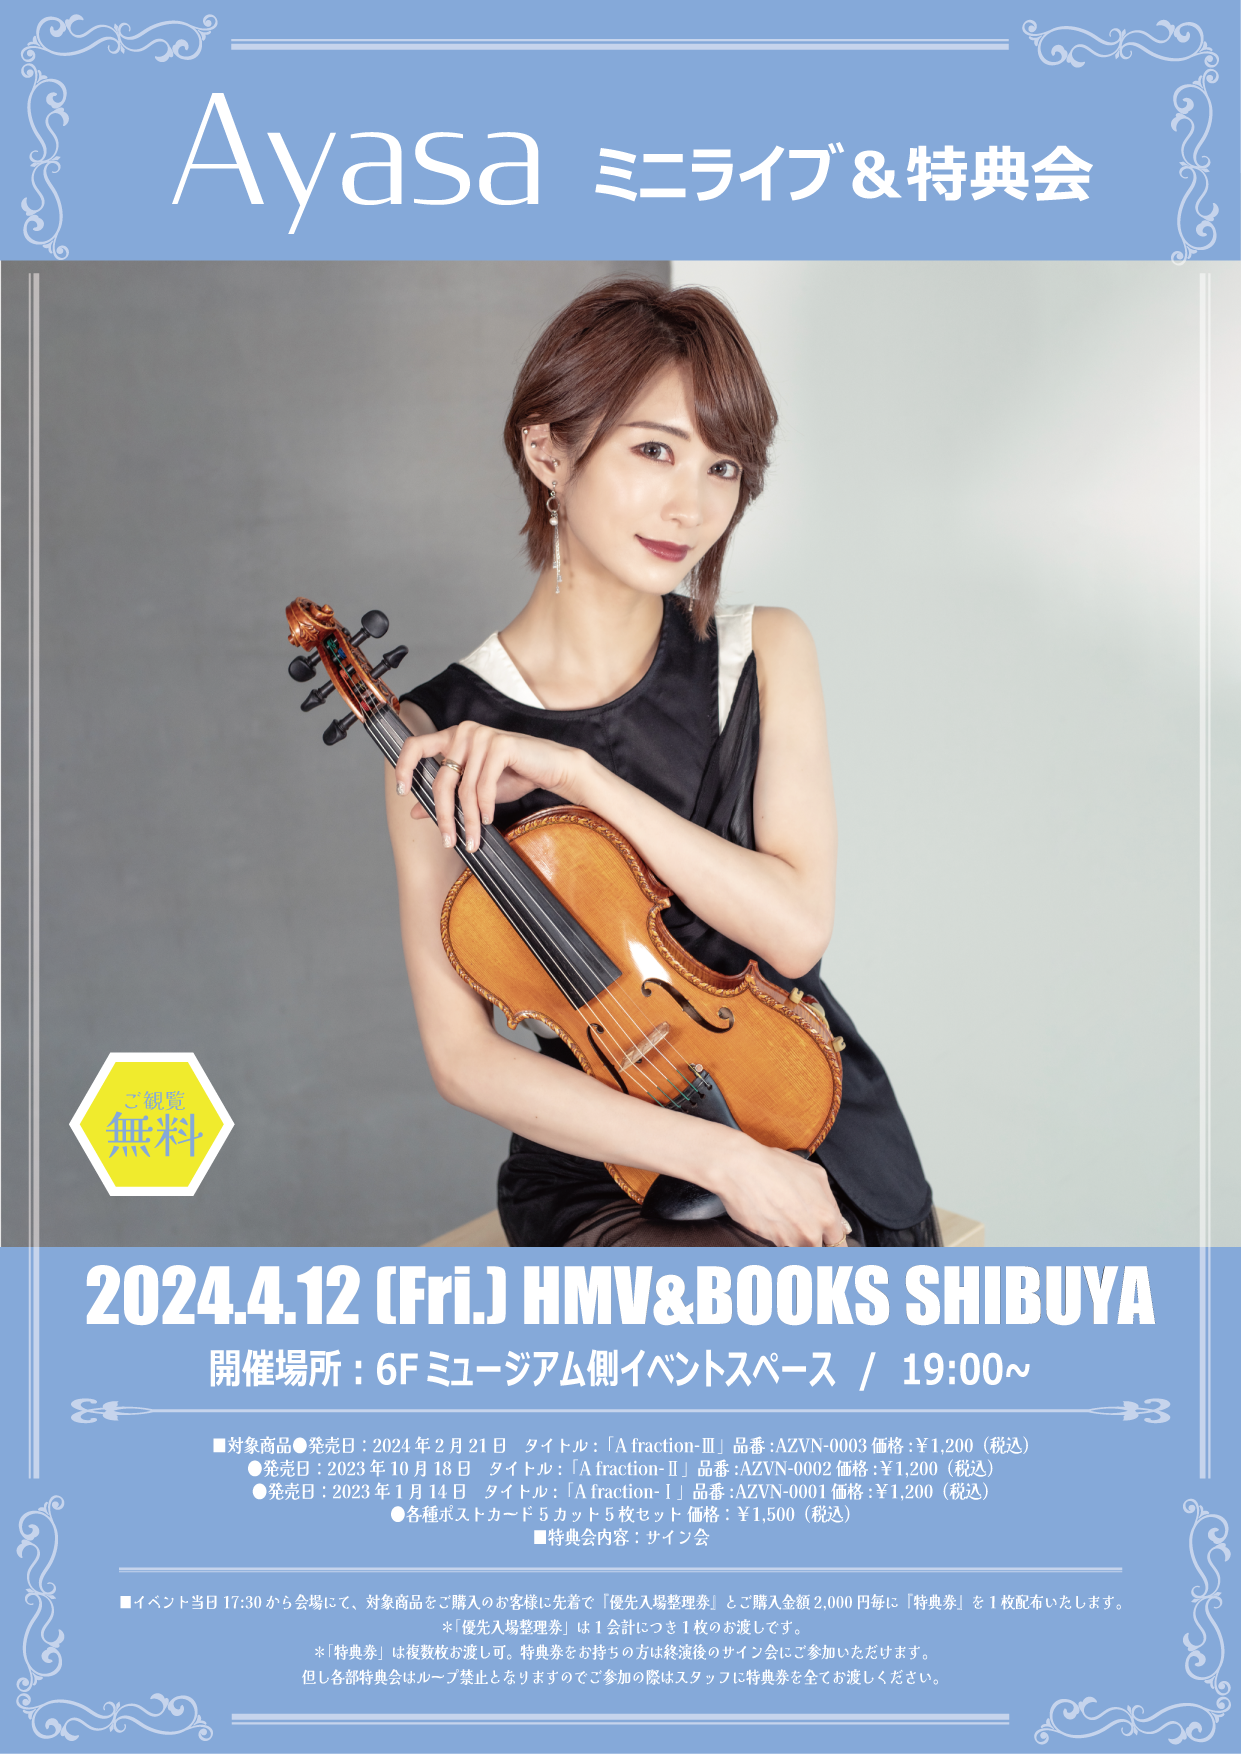 ミニライブ＆特典会＠HMV&BOOKS SHIBUYA（東京） | Ayasa Official Site